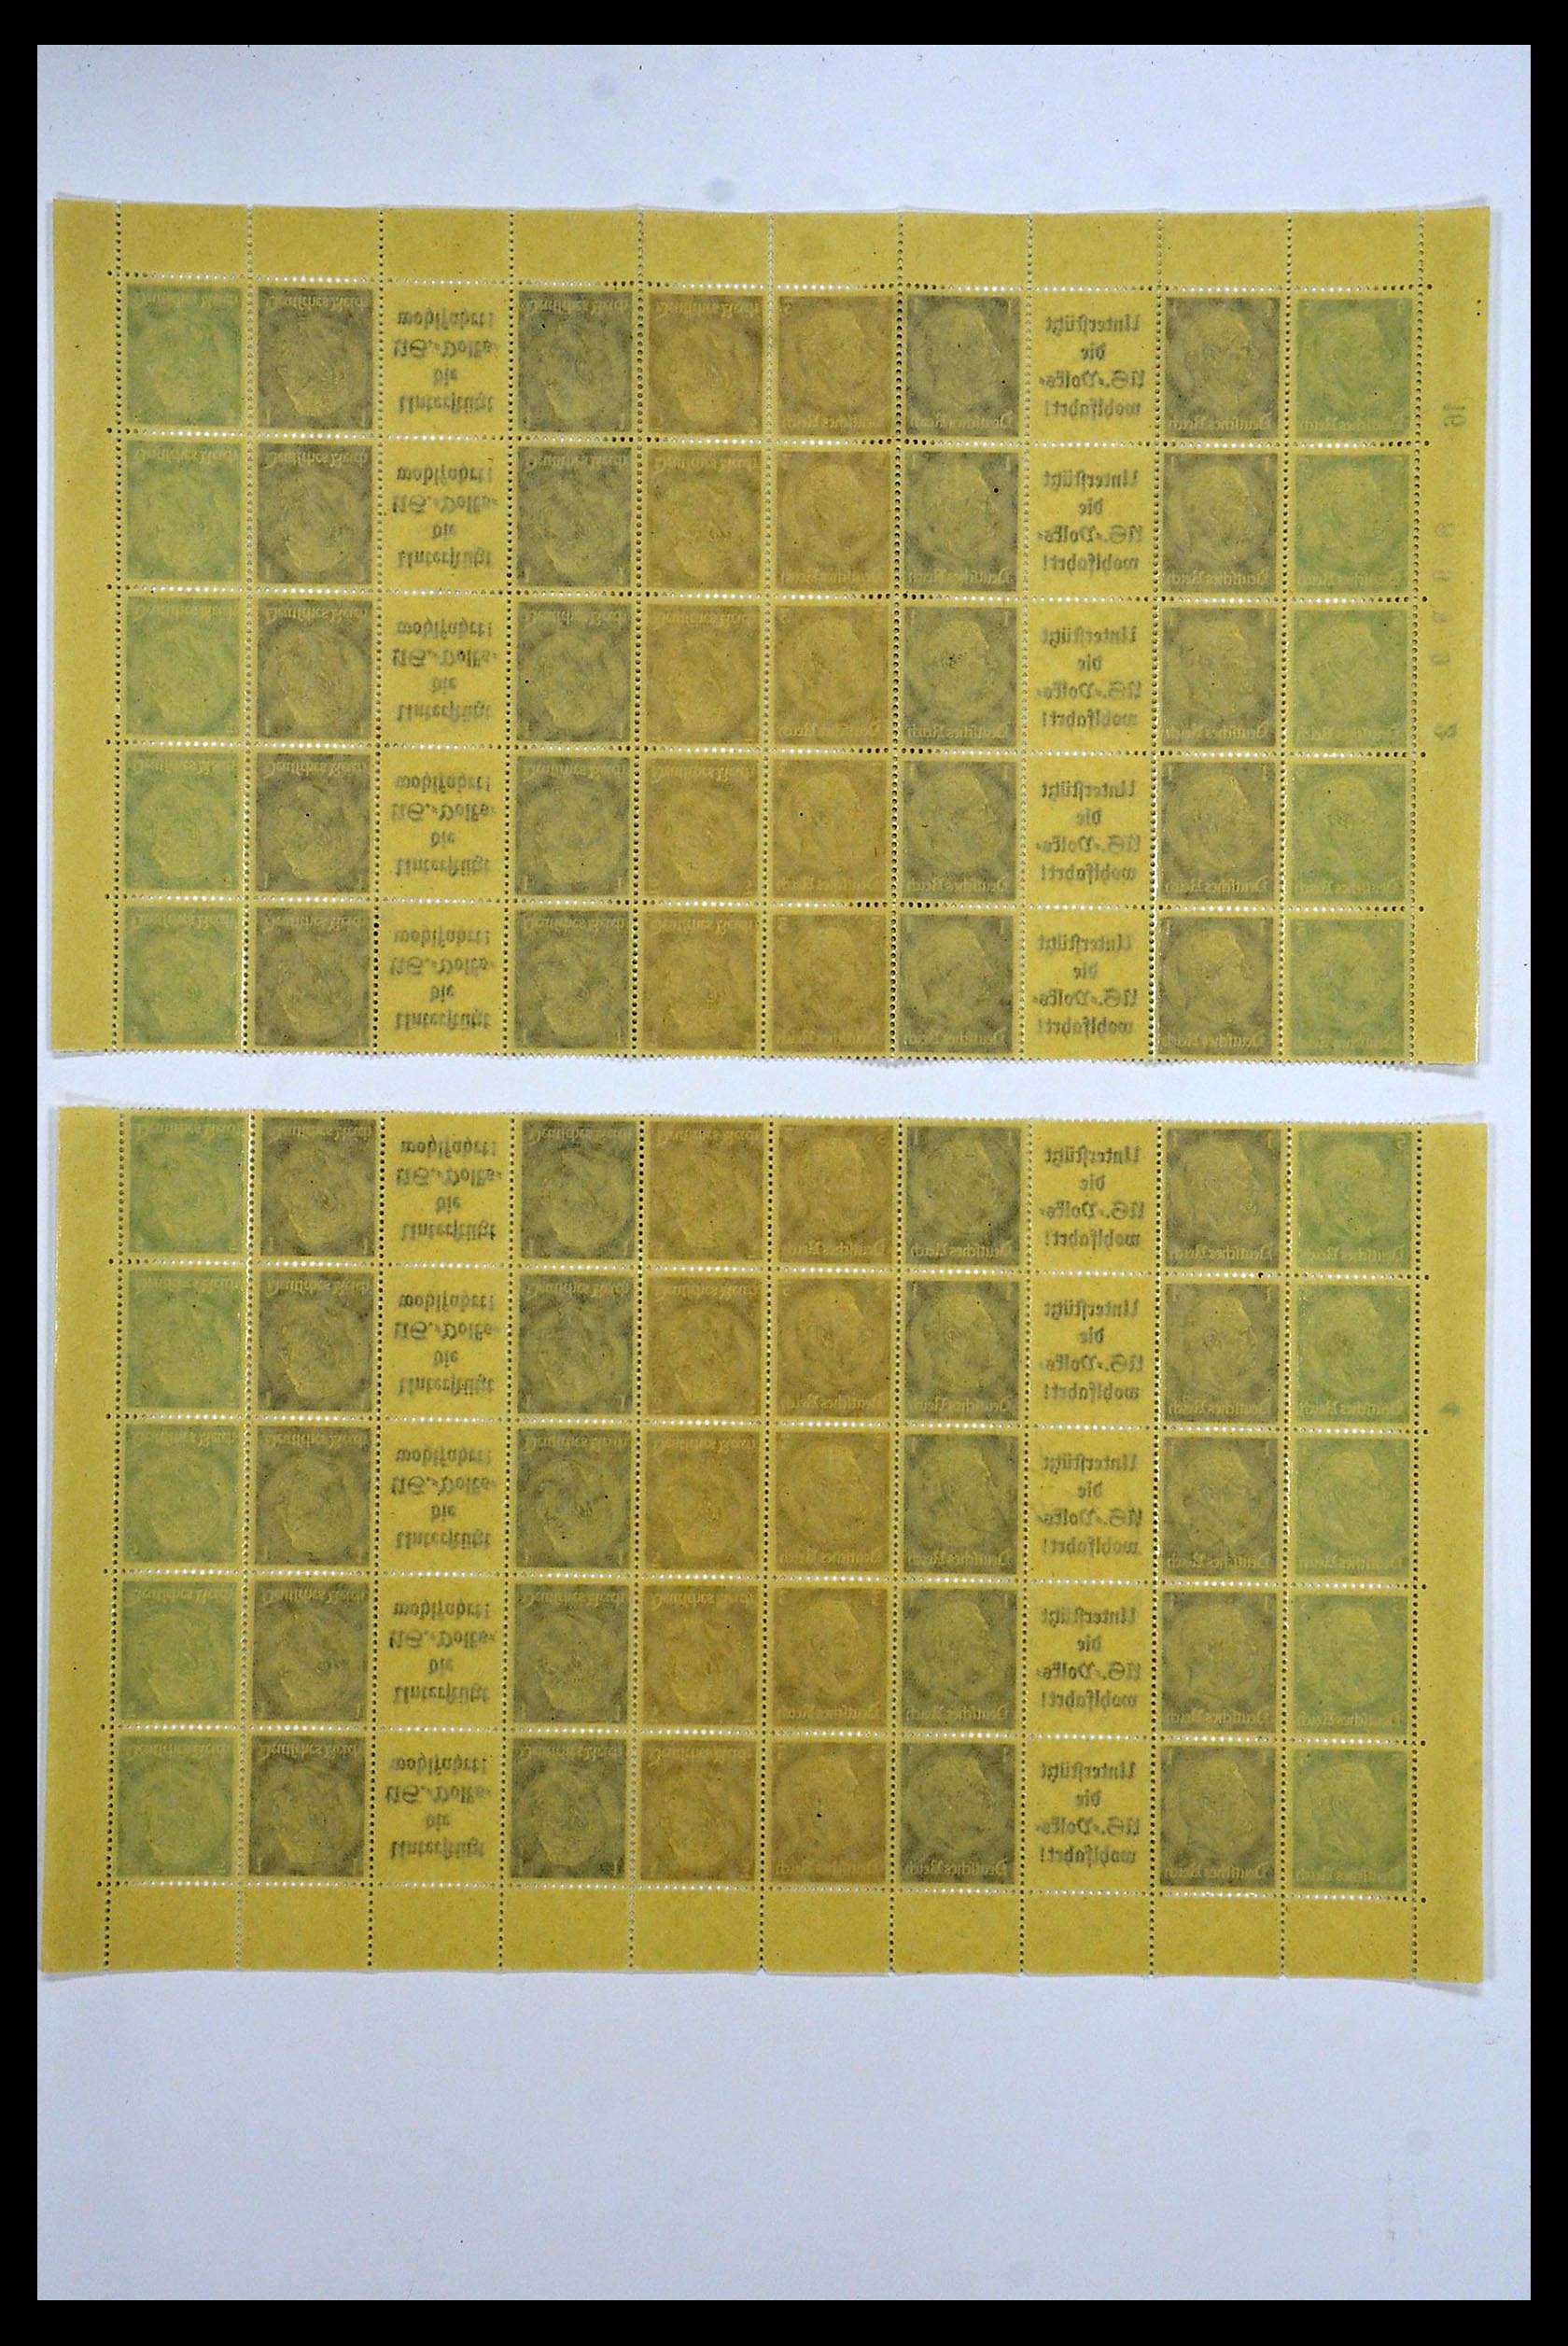 34164 056 - Stamp collection 34164 German Reich Markenheftchenbogen 1933-1942.